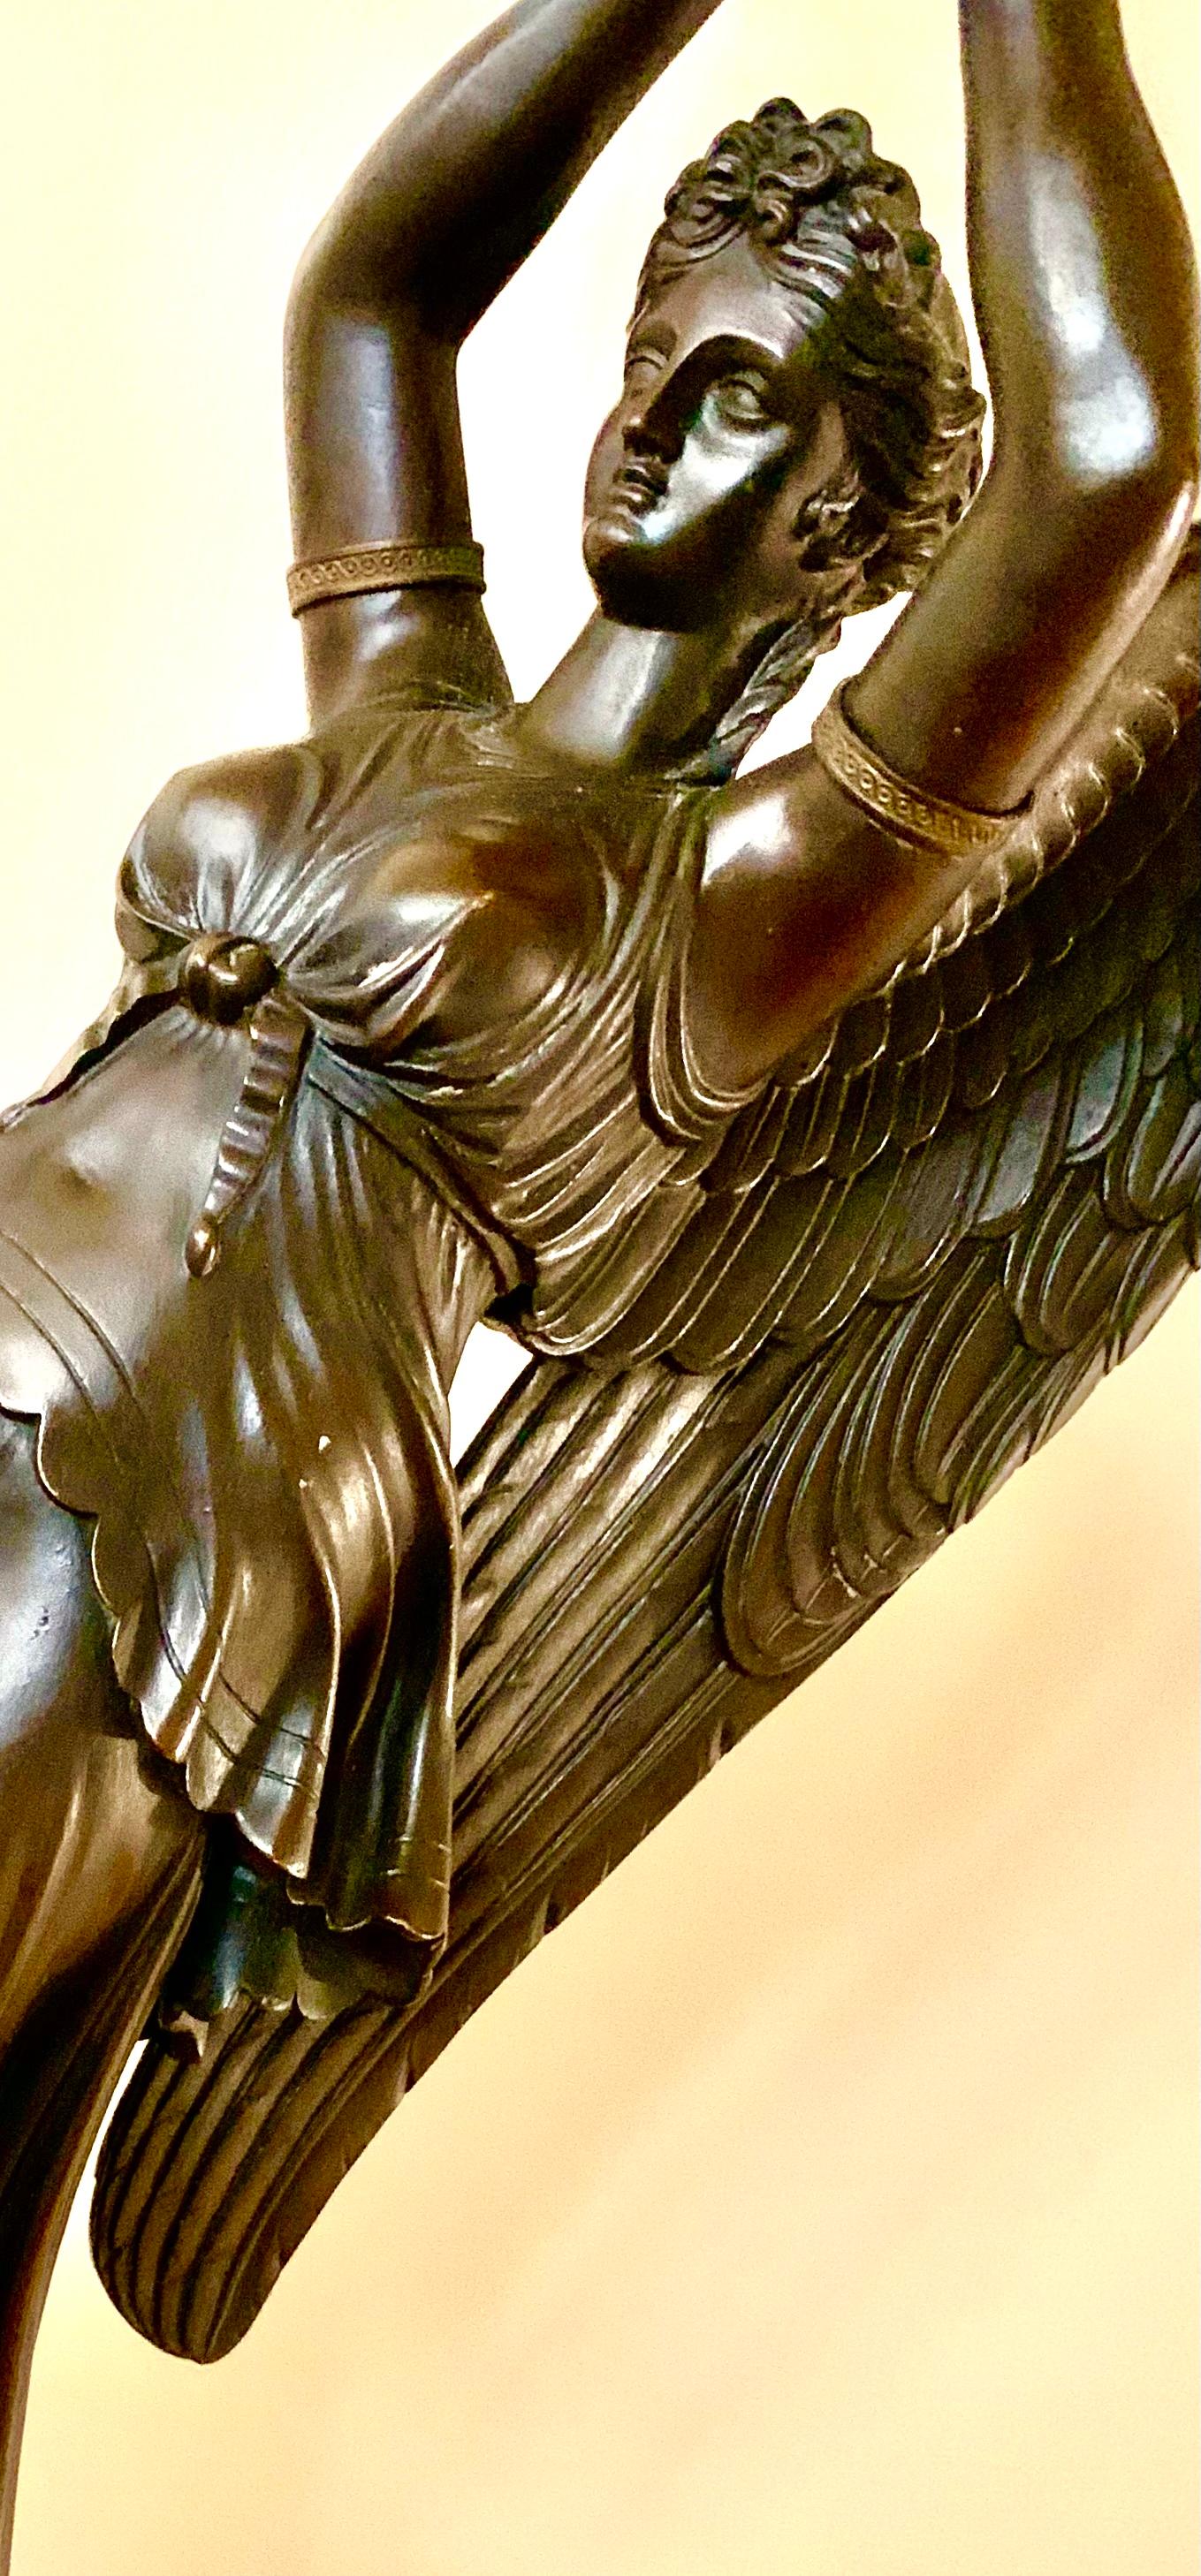 Ein außergewöhnliches Paar vergoldeter und patinierter Bronzekandelaber aus Rouge Griotte-Marmor in Palastgröße von Claude-Francois Rabiat, um 1805. Jeweils mit einer klassisch drapierten Figur des geflügelten Sieges, der Göttin Nike, die einen